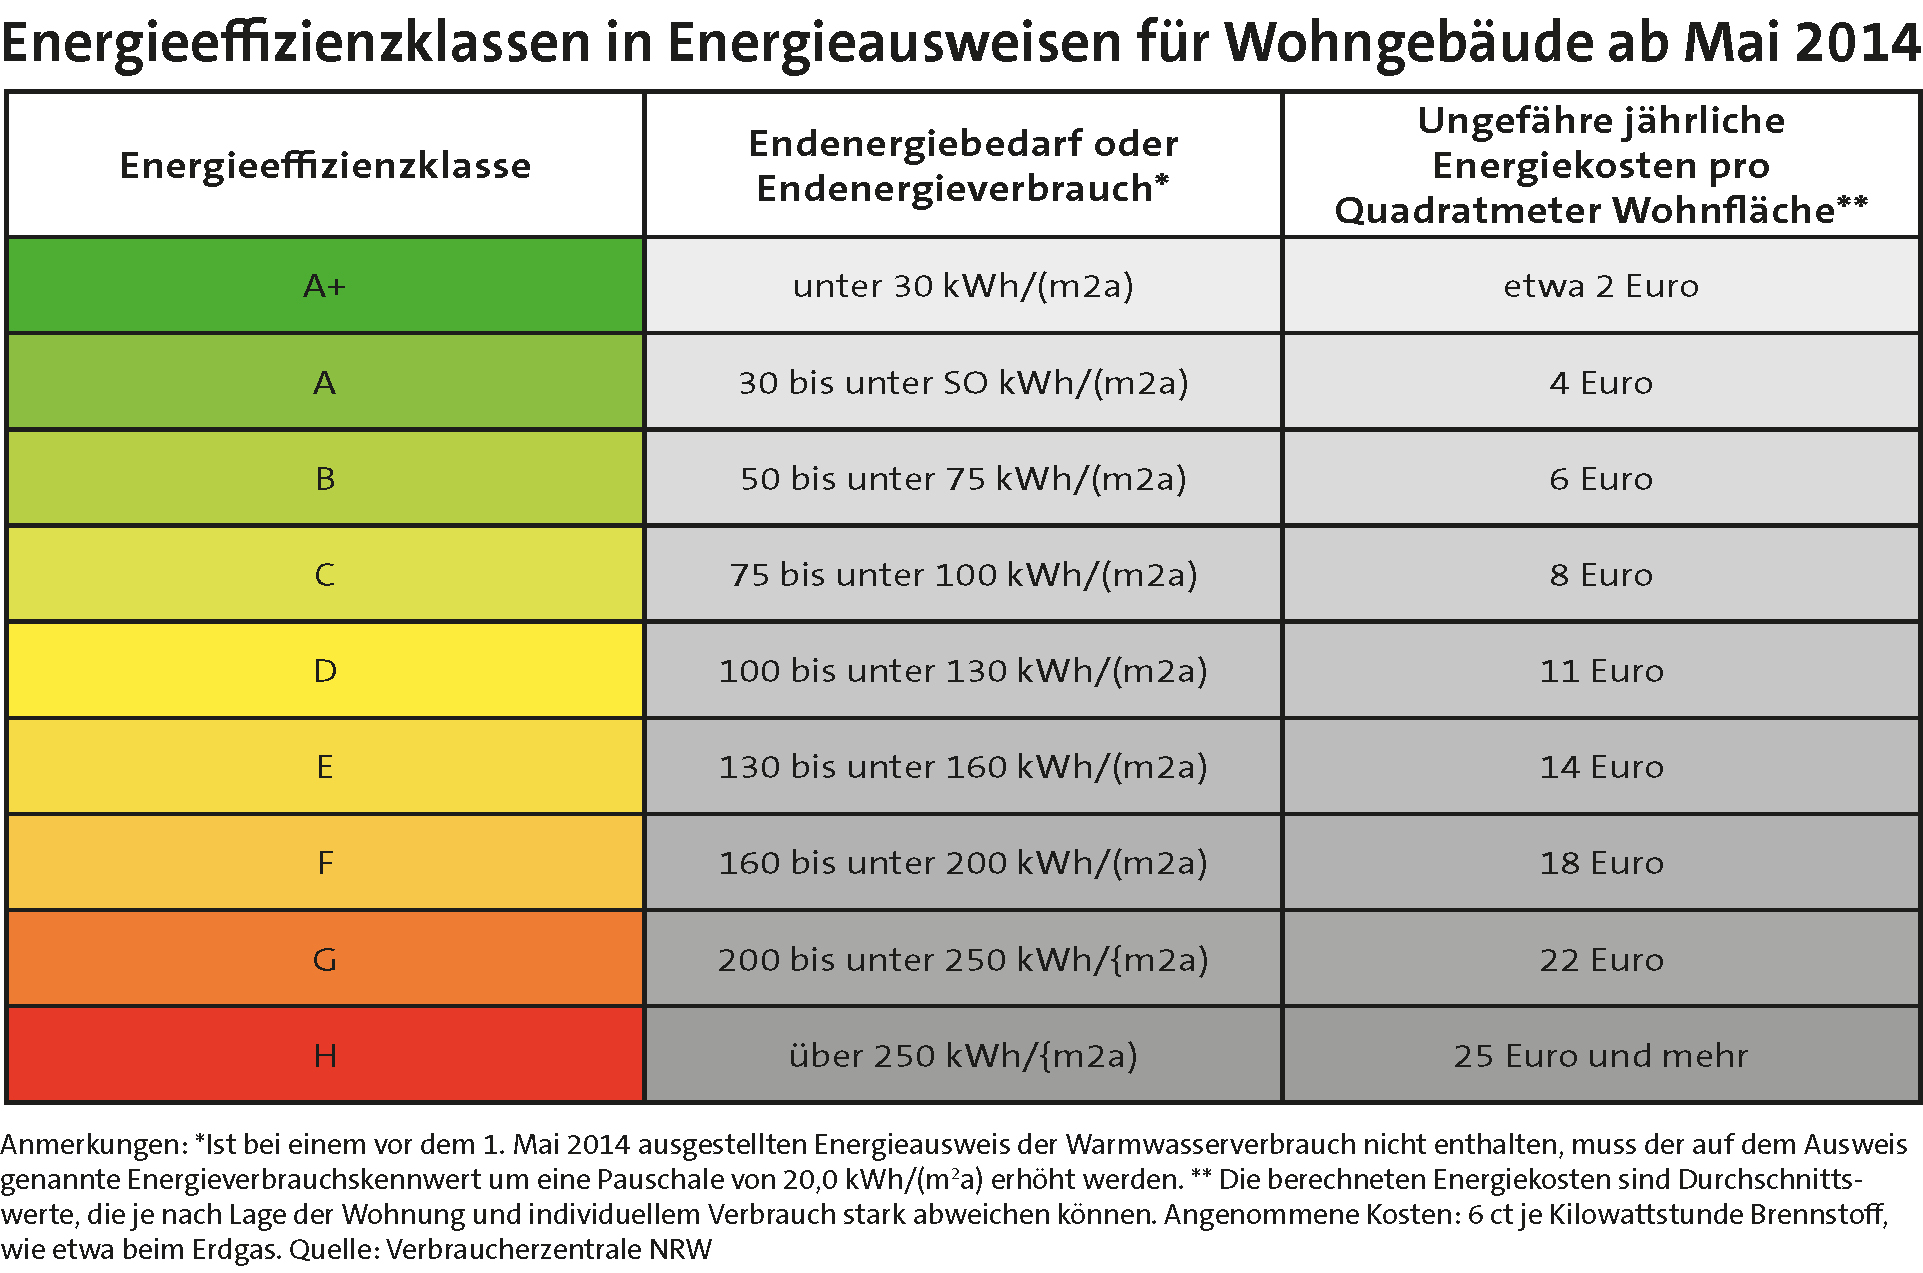 Tabelle: Energieeffizienzklassen in Energieausweisen für Wohngebäude ab Mai 2014.